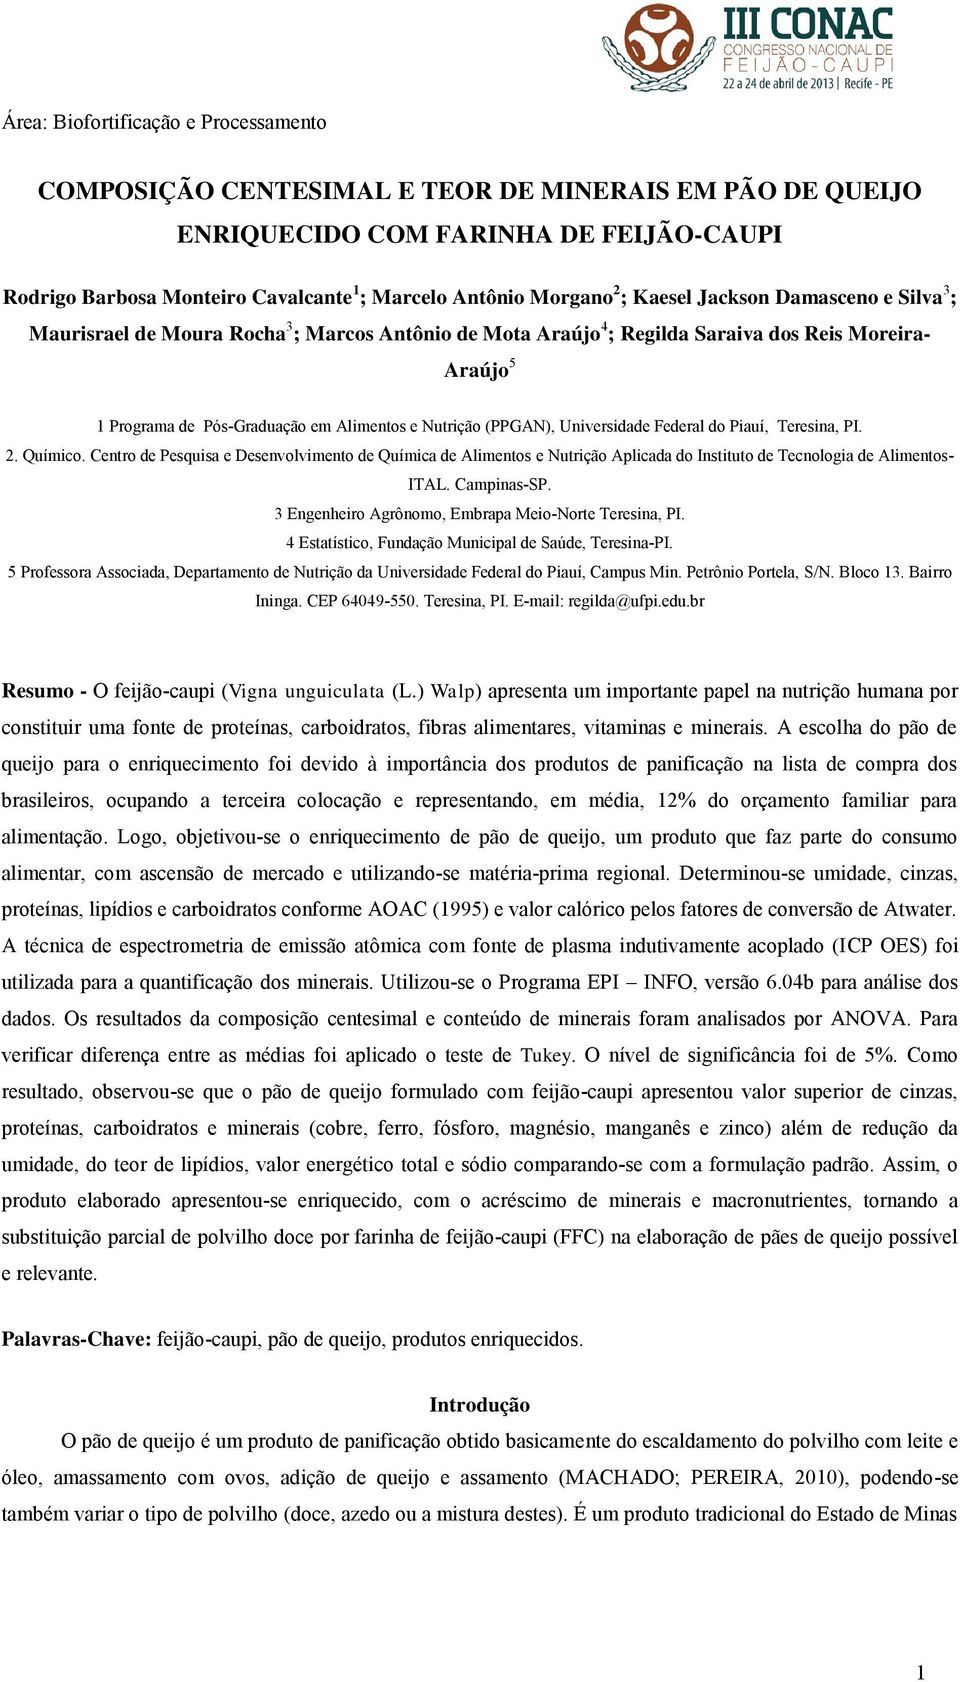 (PPGAN), Universidade Federal do Piauí, Teresina, PI. 2. Químico. Centro de Pesquisa e Desenvolvimento de Química de Alimentos e Nutrição Aplicada do Instituto de Tecnologia de Alimentos- ITAL.